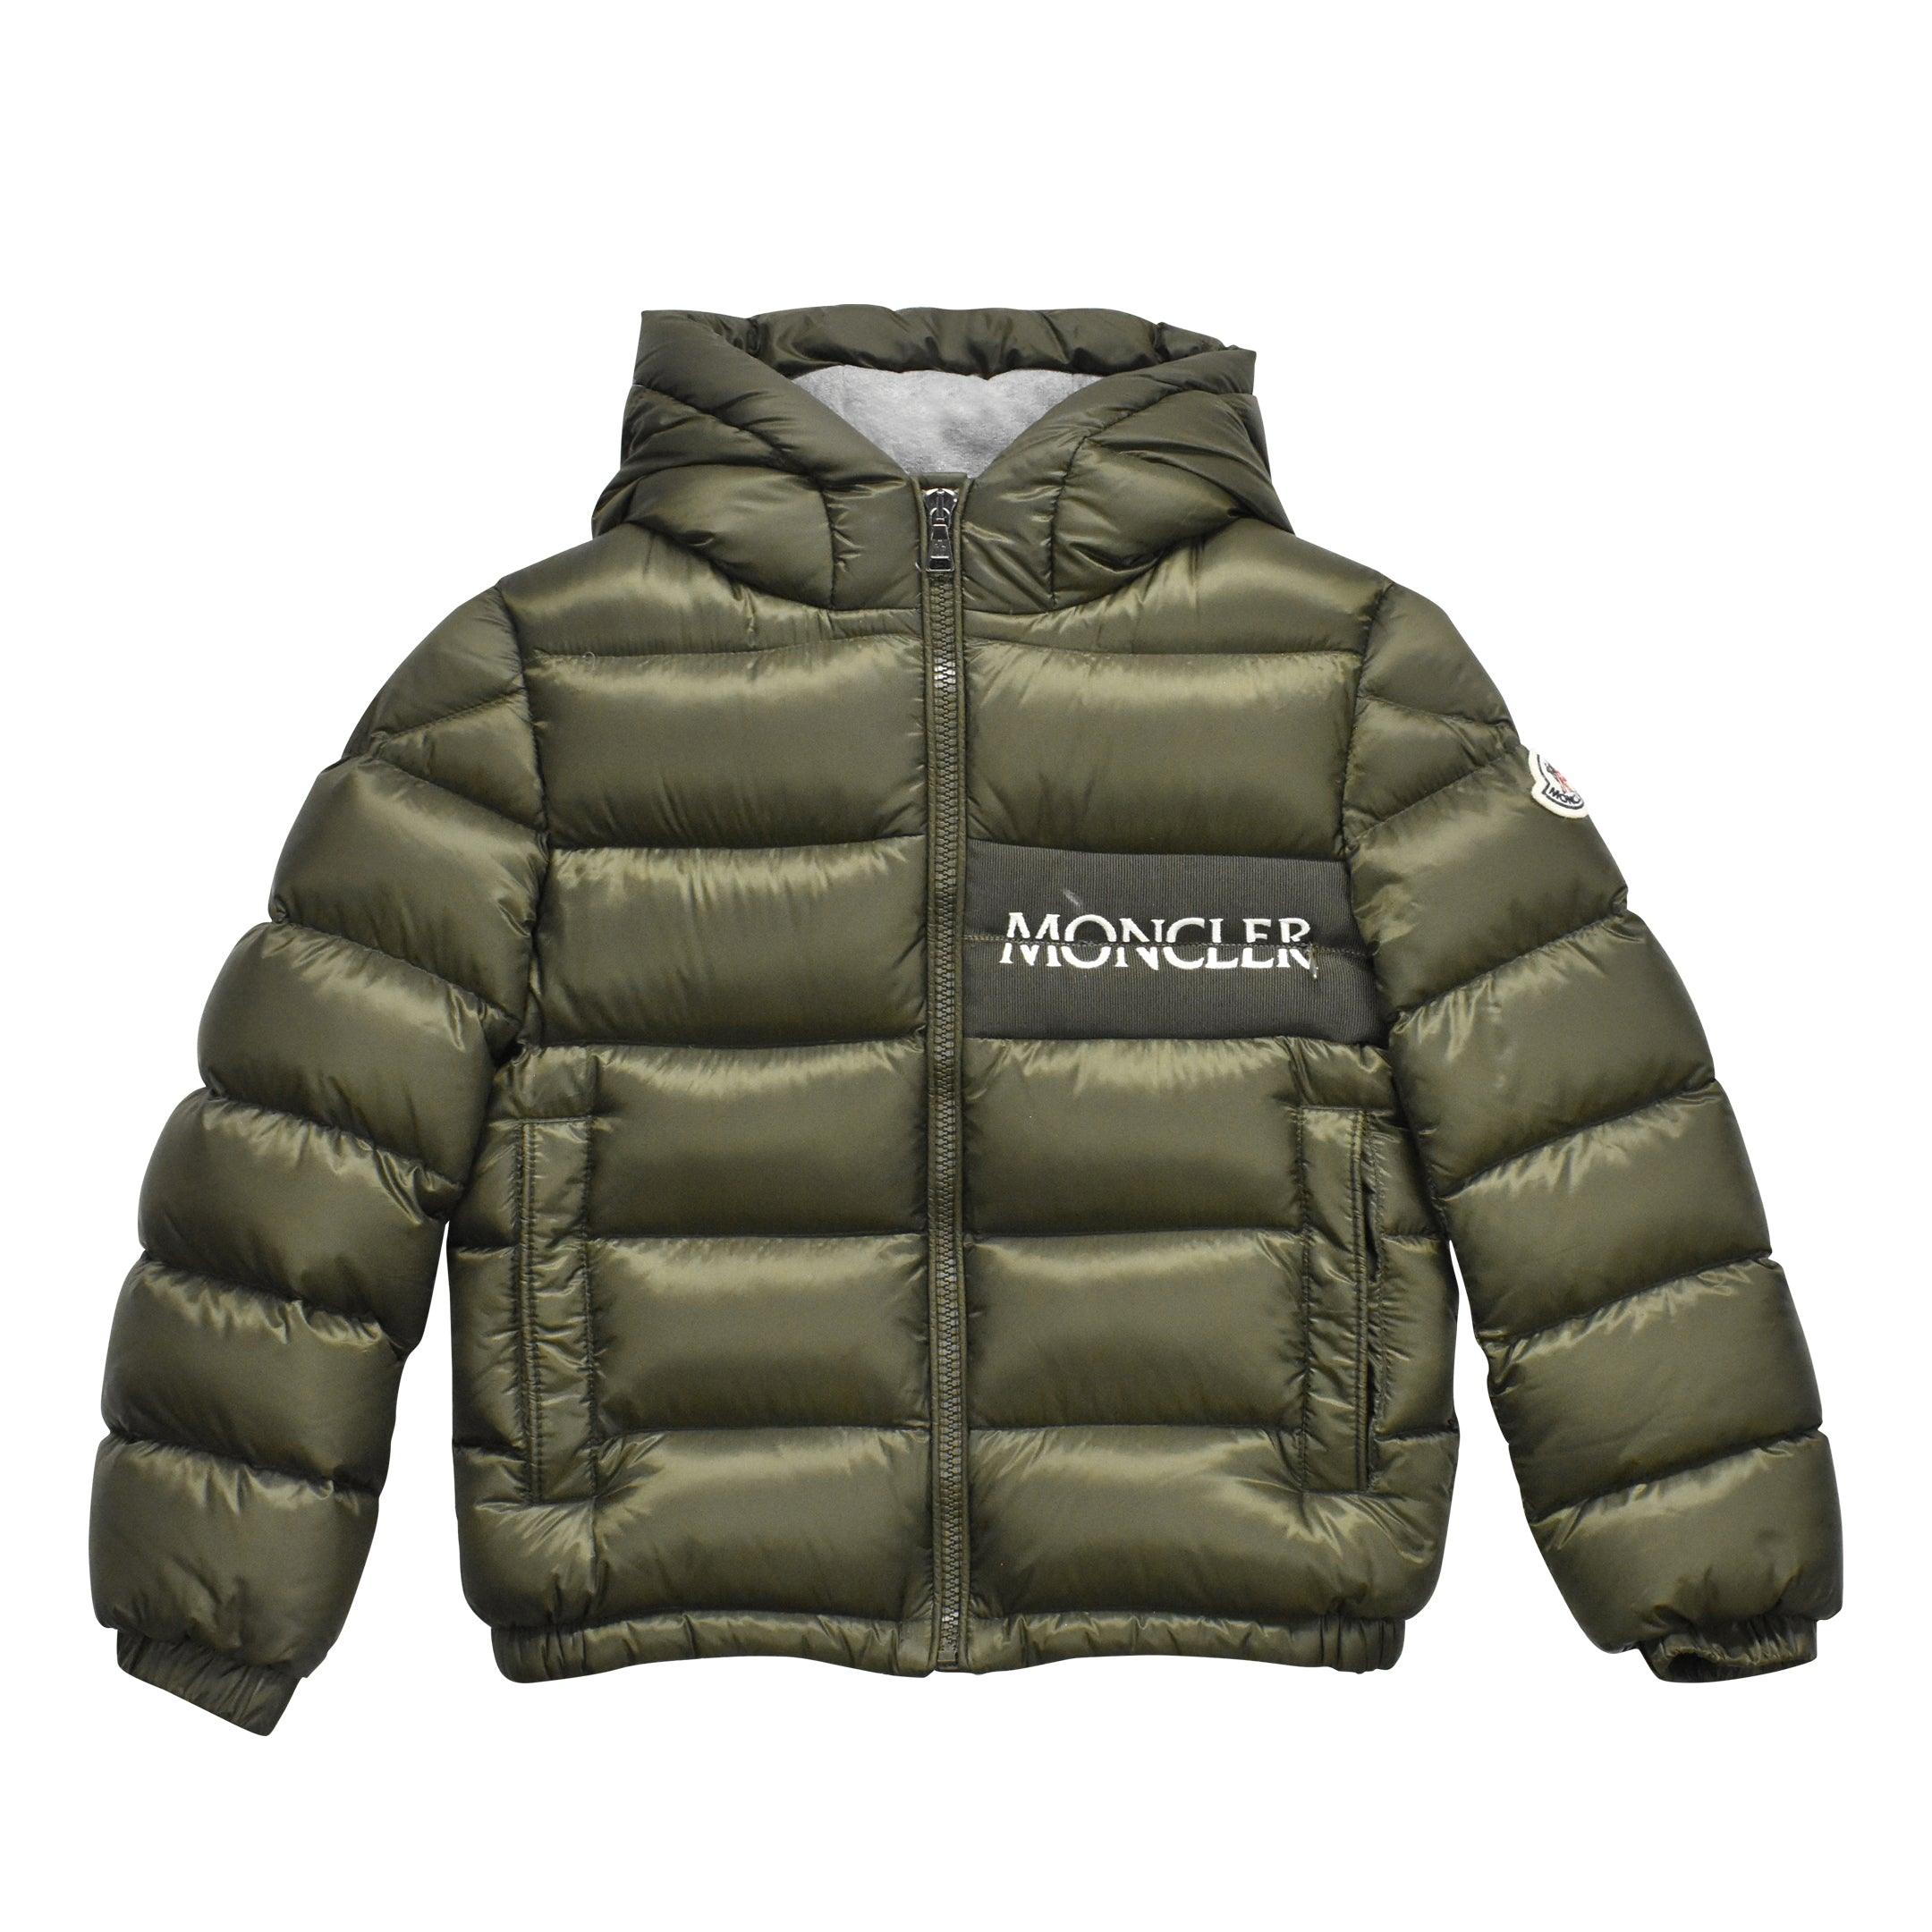 Moncler 'Aiton' Jacket - Youth 8 - Fashionably Yours